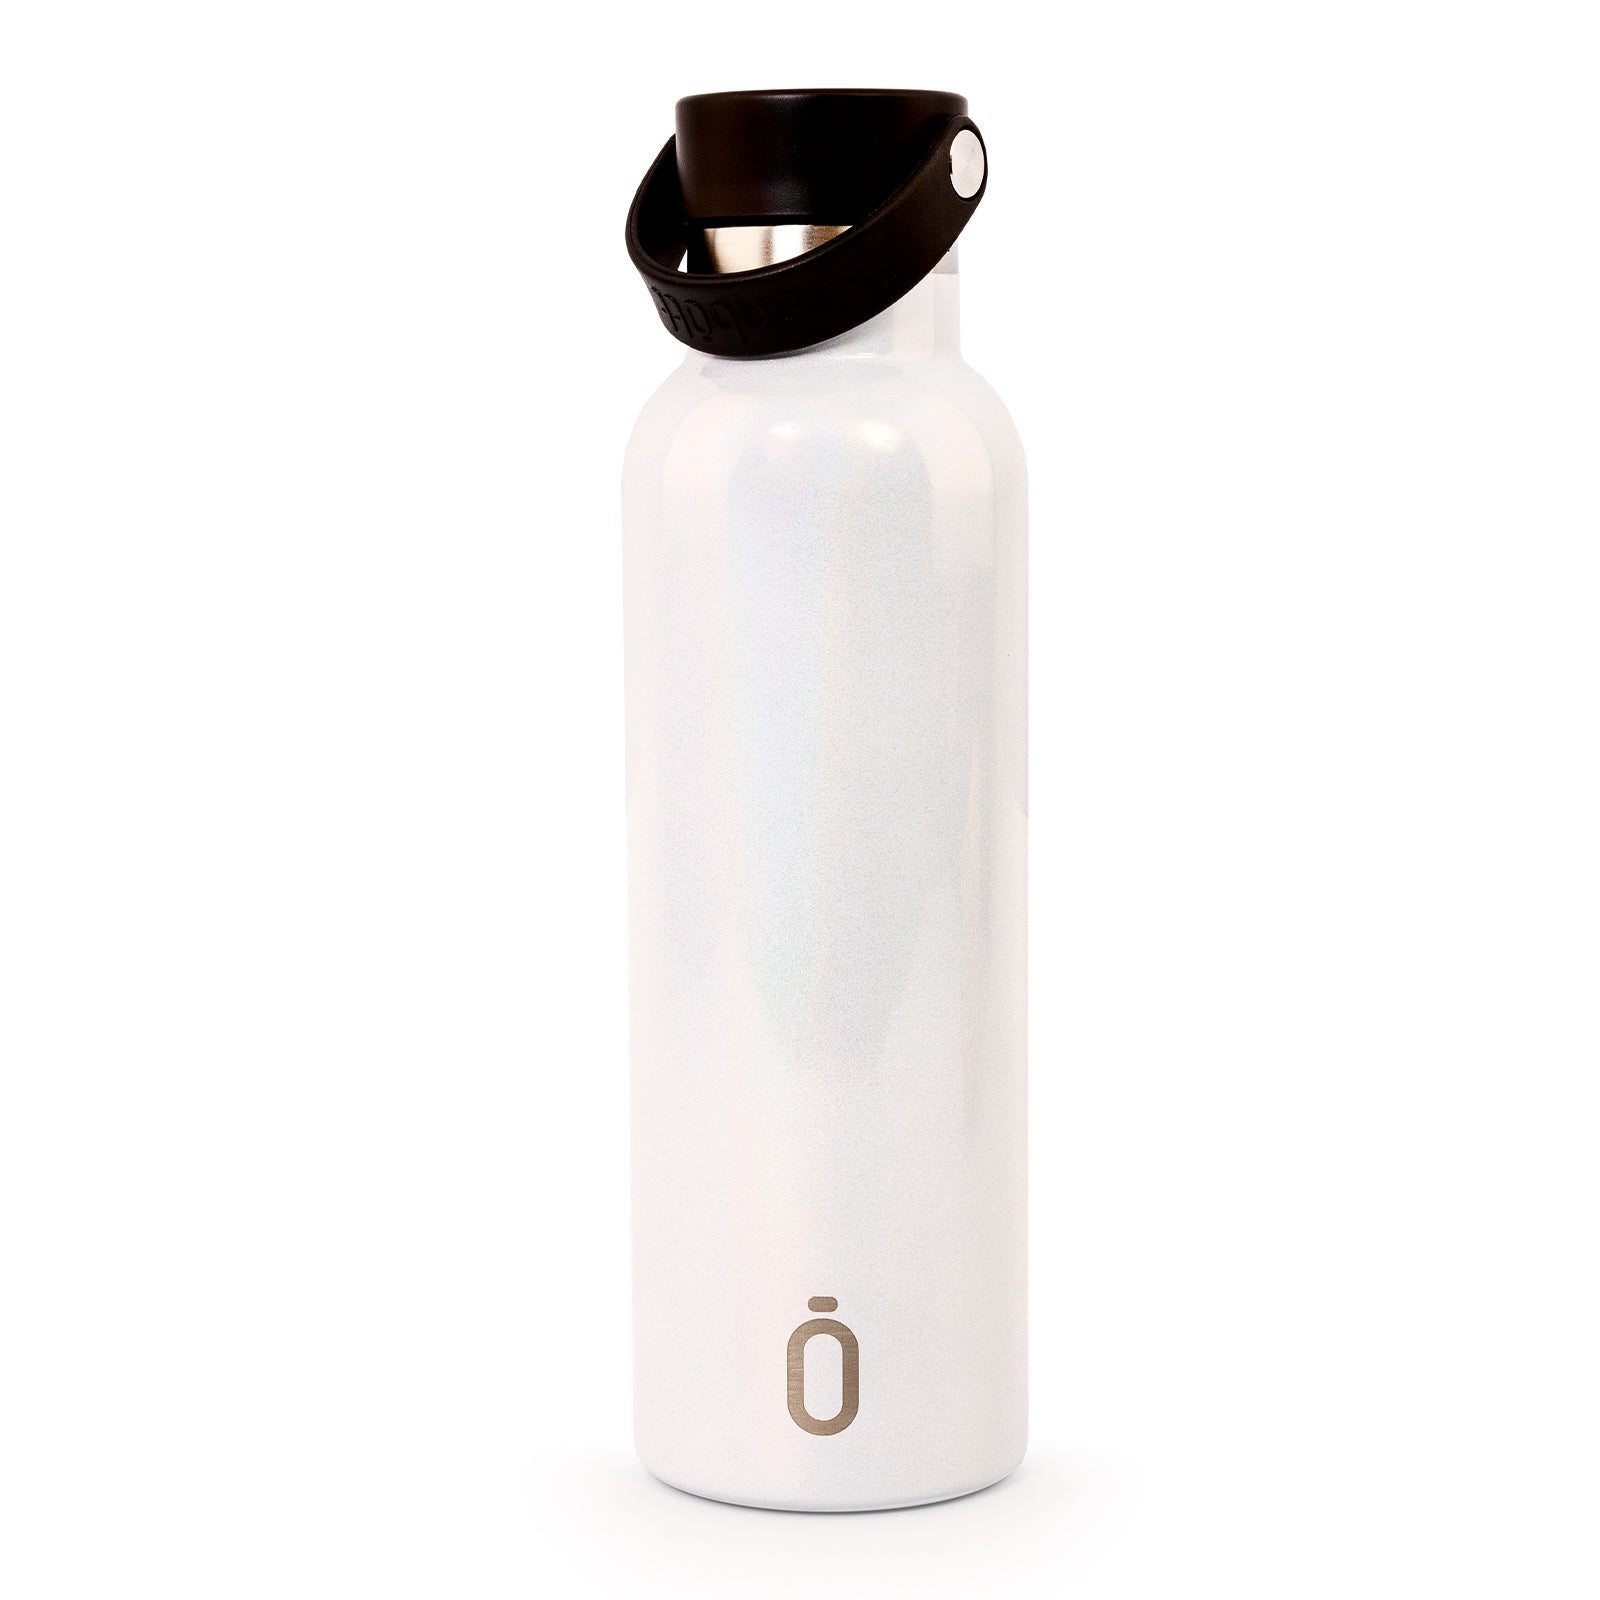 Runbott Perla - Botella Térmica de 0.6L con Interior Cerámico y Acabado Brillante. Blanco